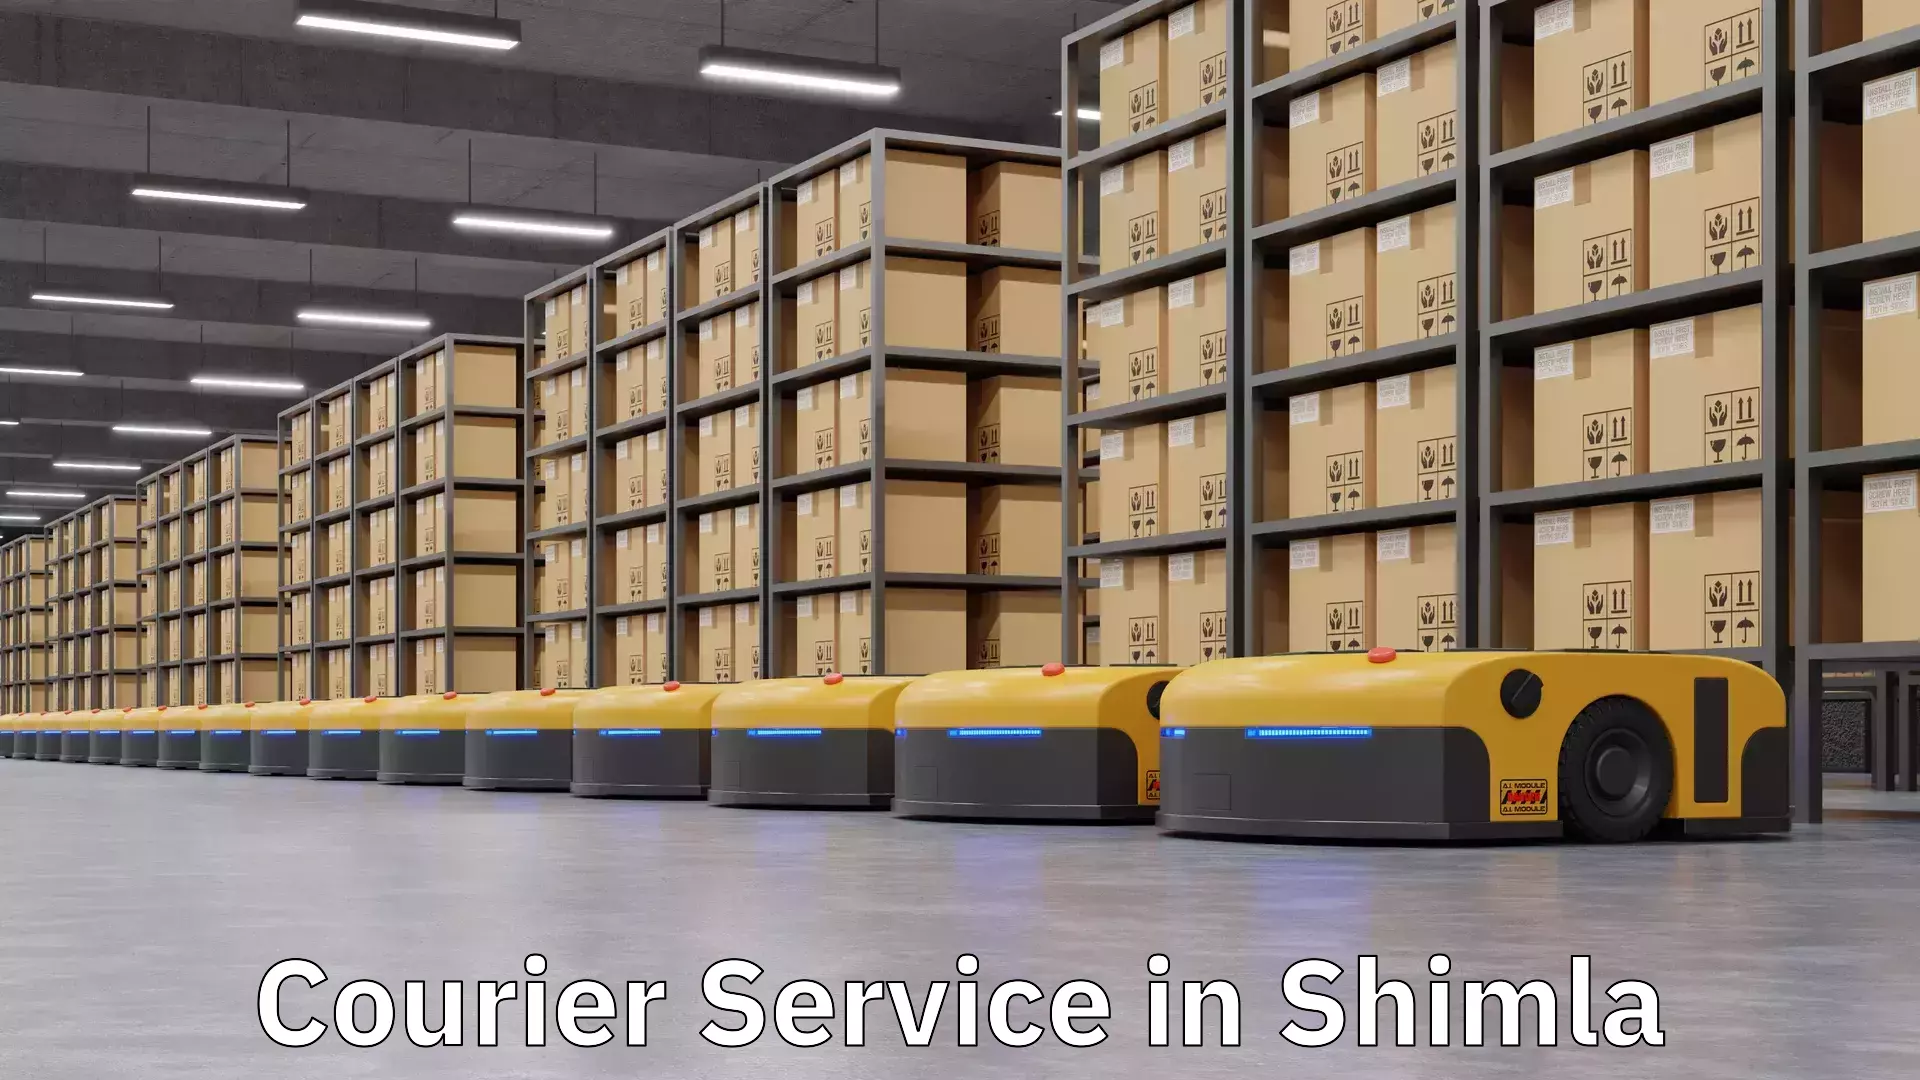 Courier service comparison in Shimla